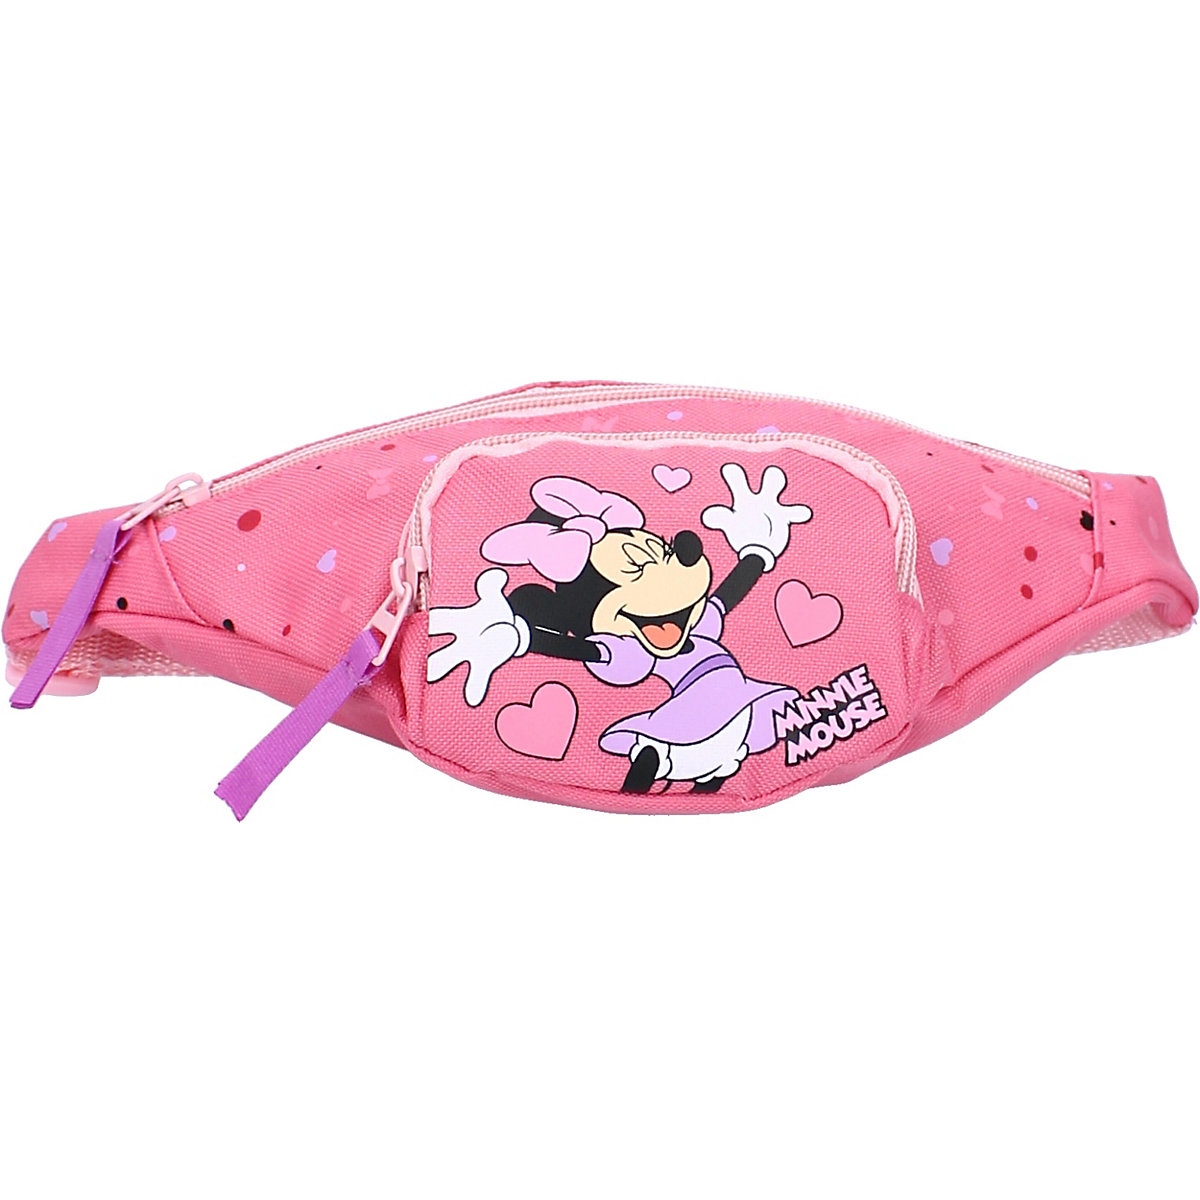 Gürteltasche/Hüfttasche Disney Minnie Mouse Aspire To Inspire